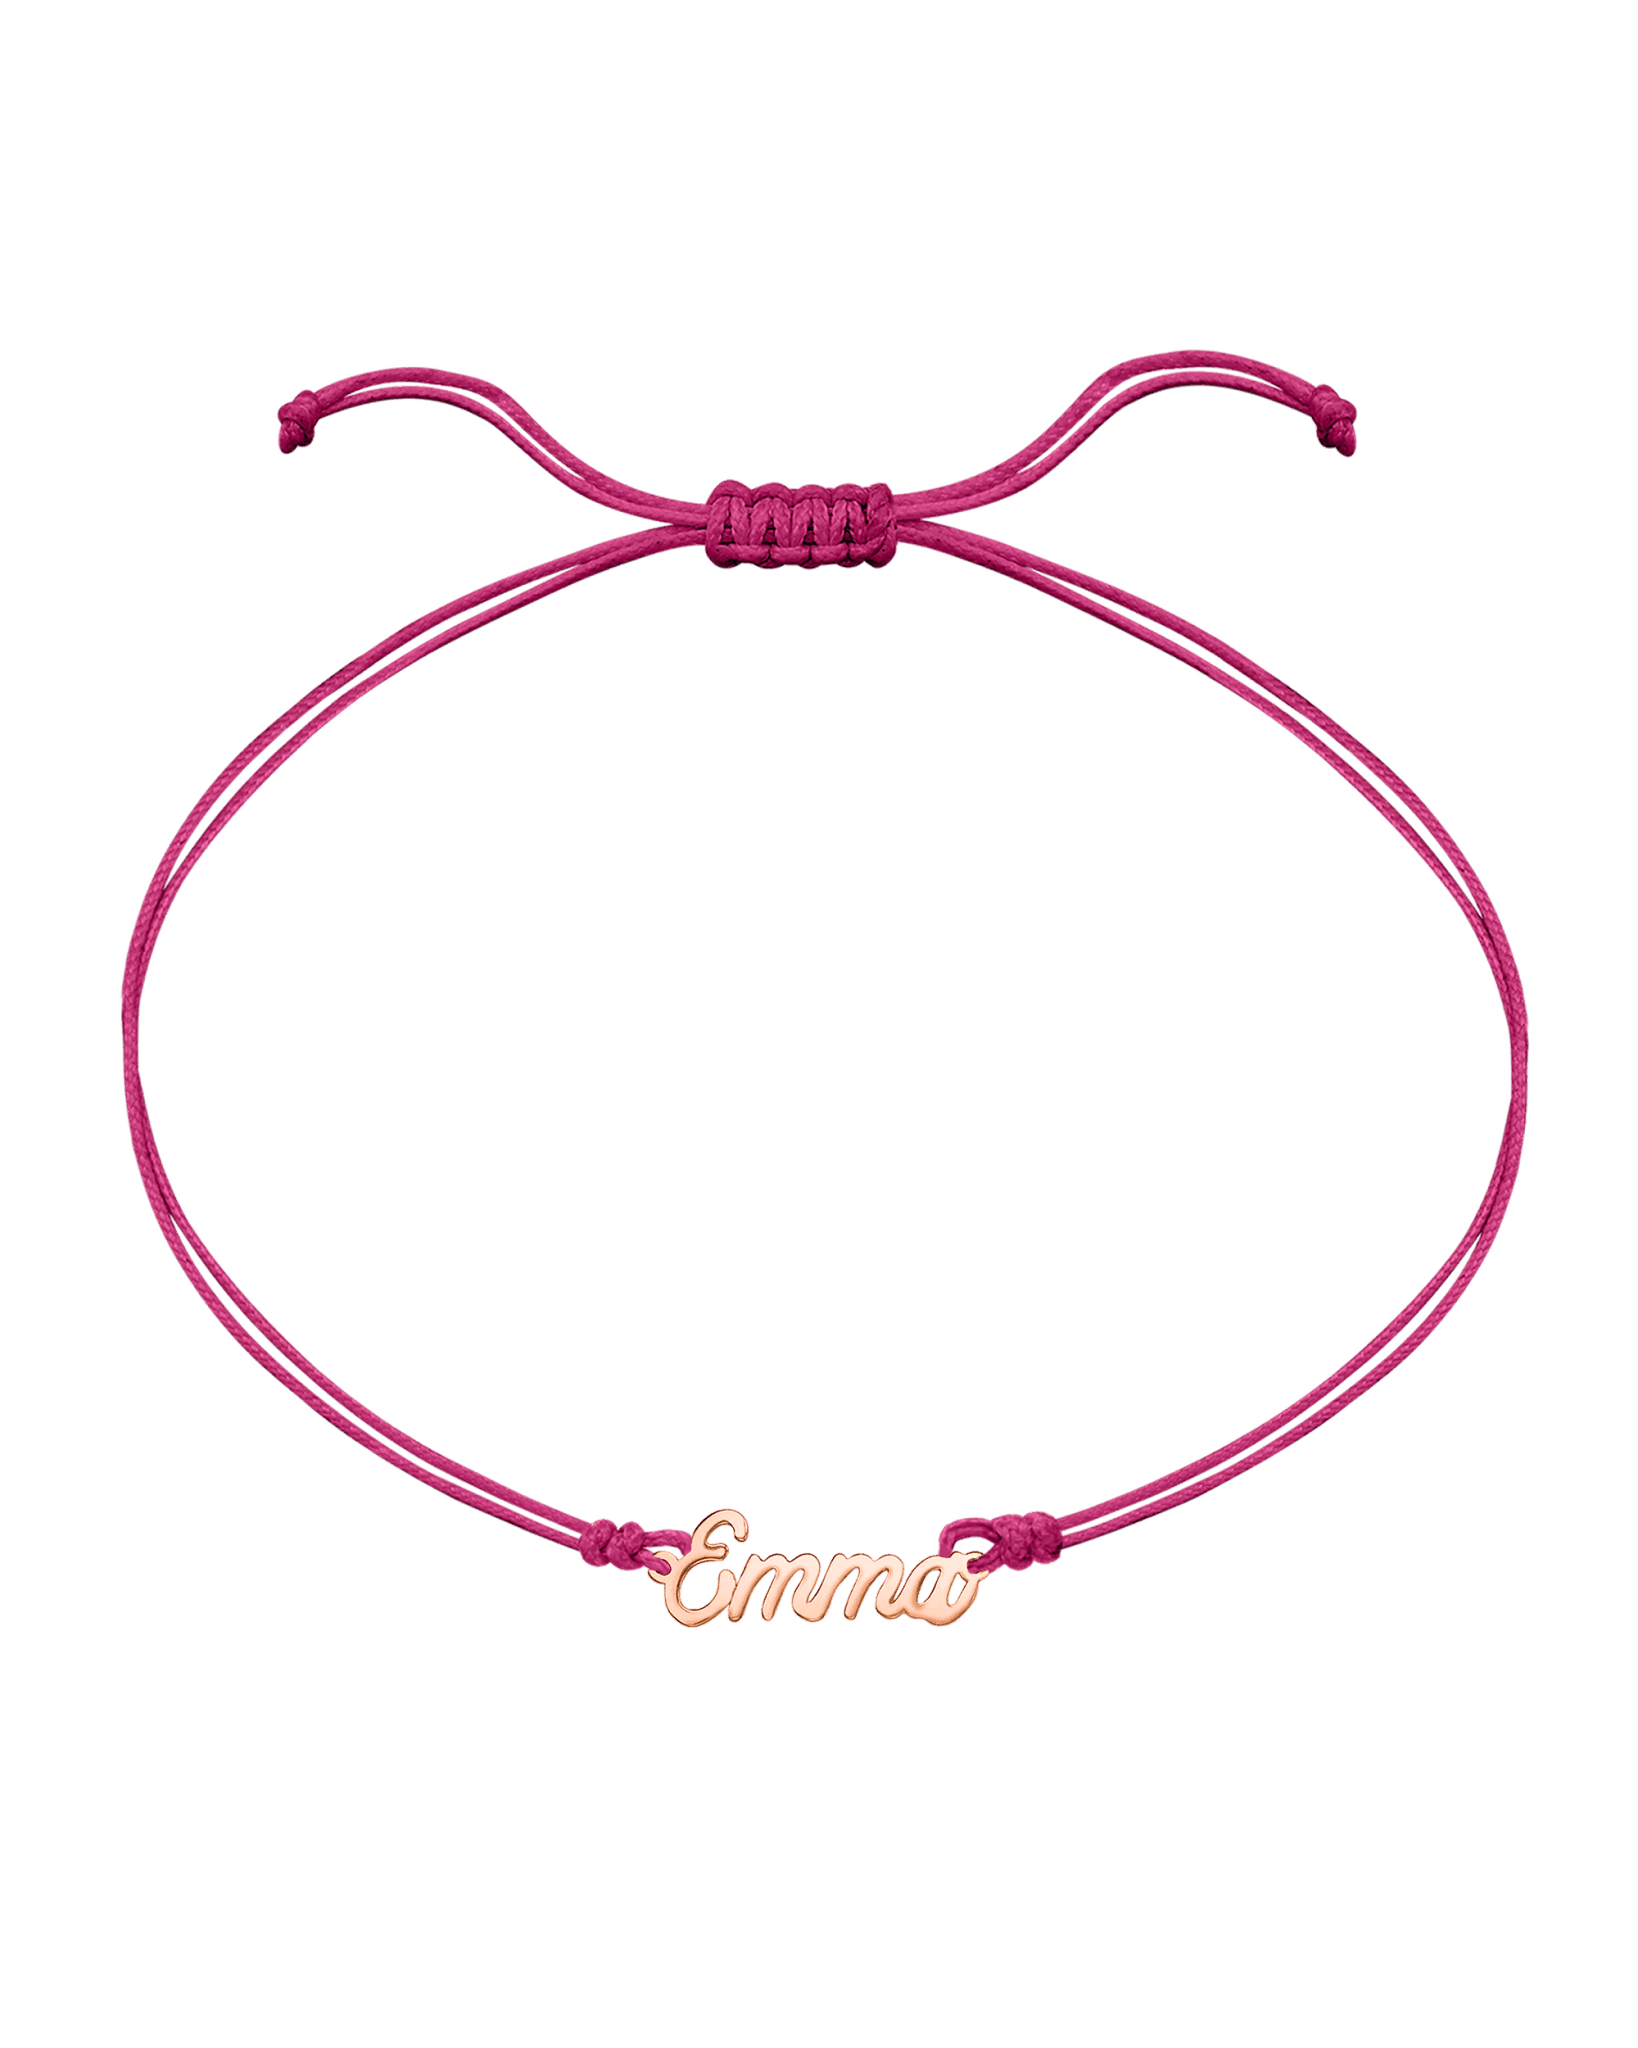 Name Plate String of Love - 14K Rose Gold Bracelets 14K Solid Gold Pink 1 